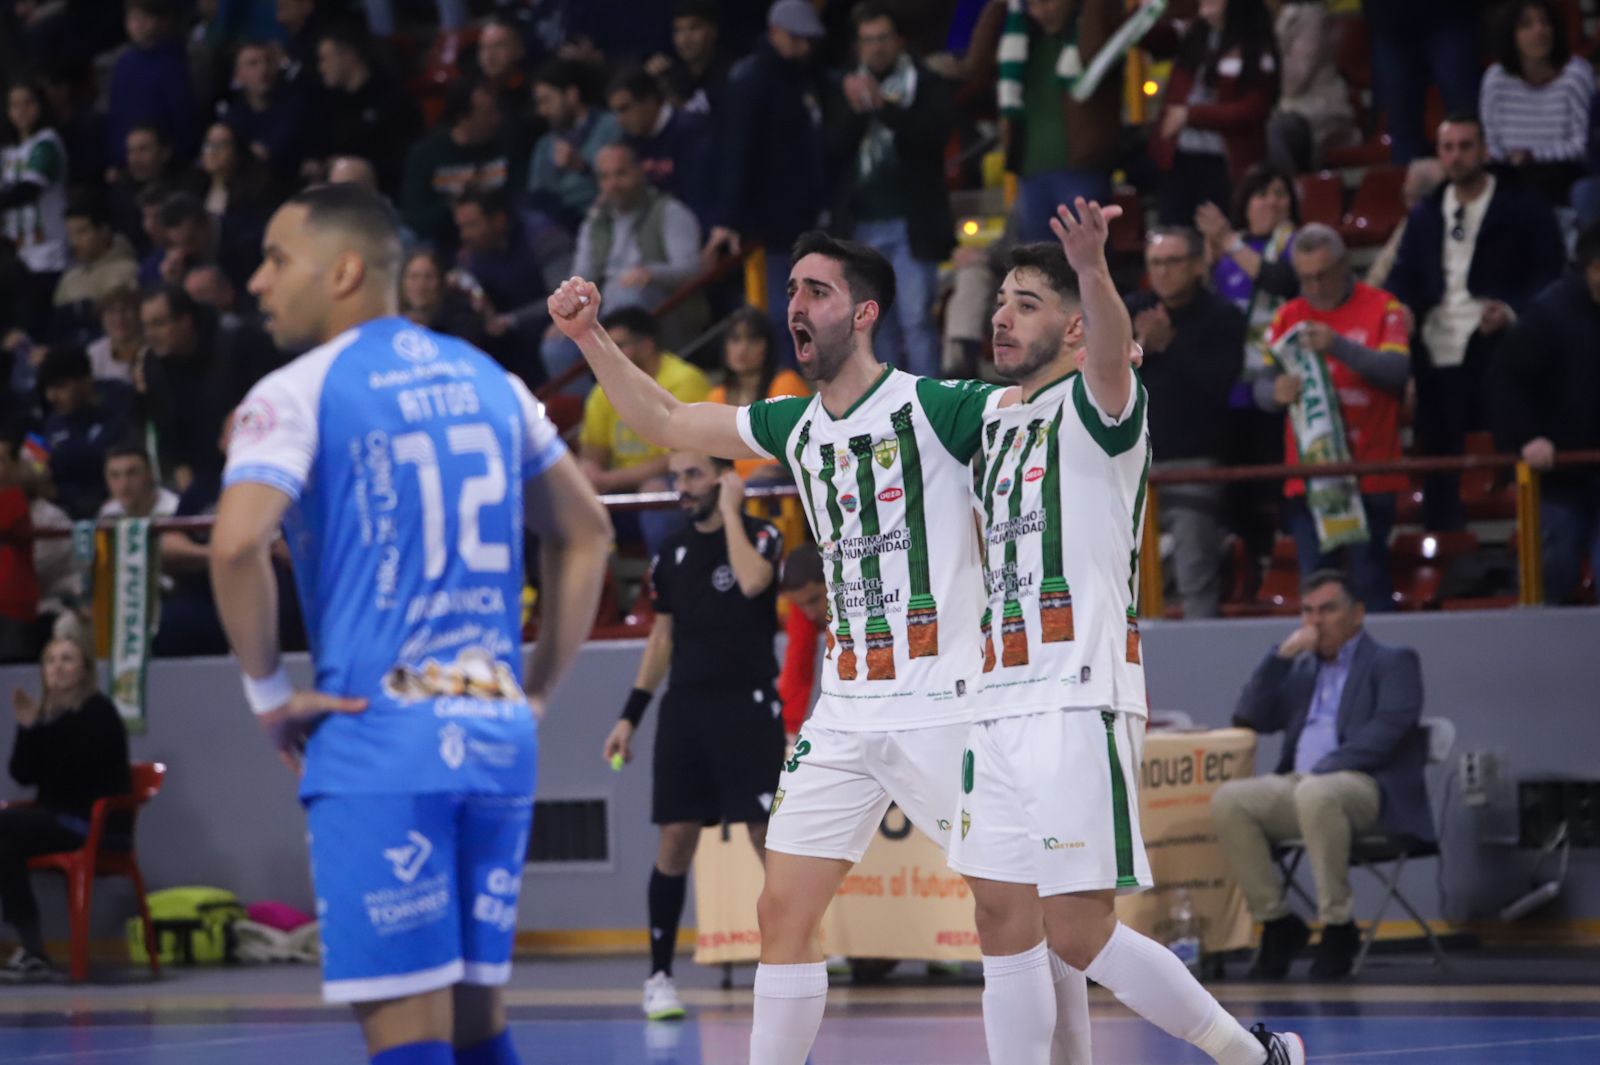 Córdoba Futsal-Noia: las imágenes del partido en el Palacio Vista Alegre